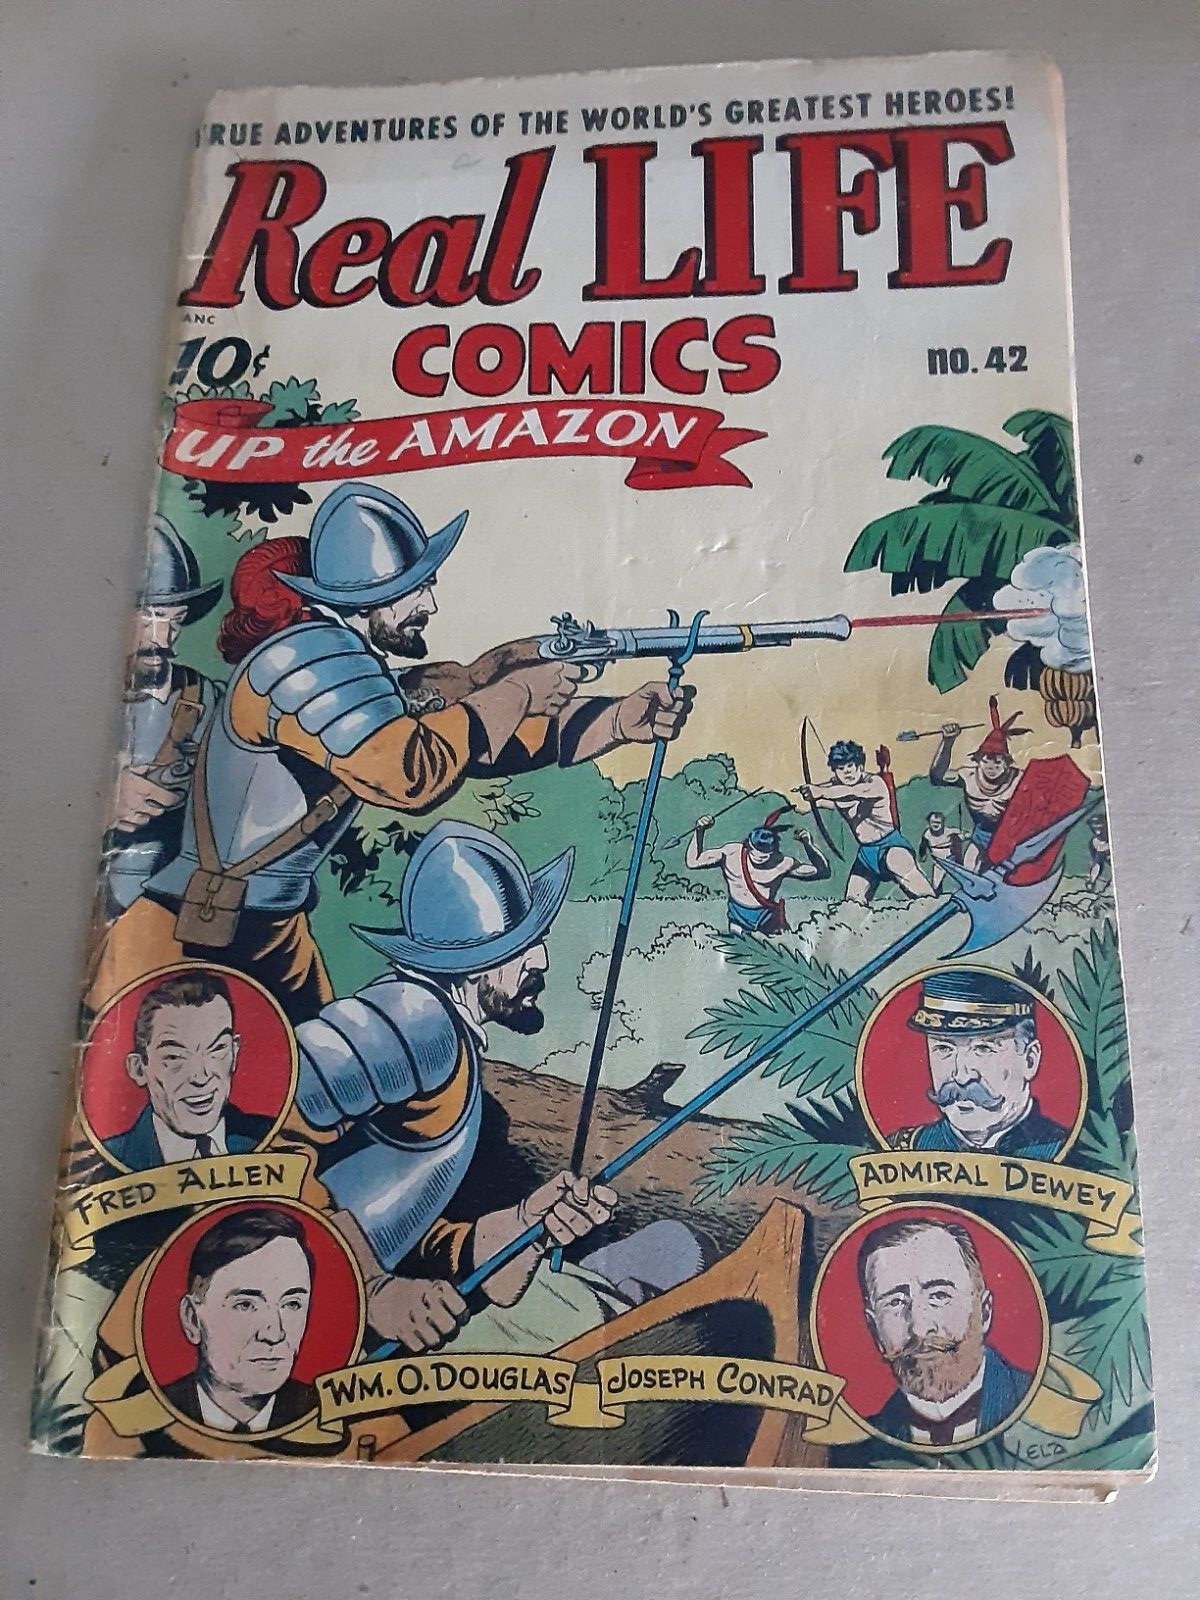 REAL LIFE COMICS 42 CGC 6.0 ALEX SCHOMBURG UP THE AMAZON NEDOR COMICR 1947